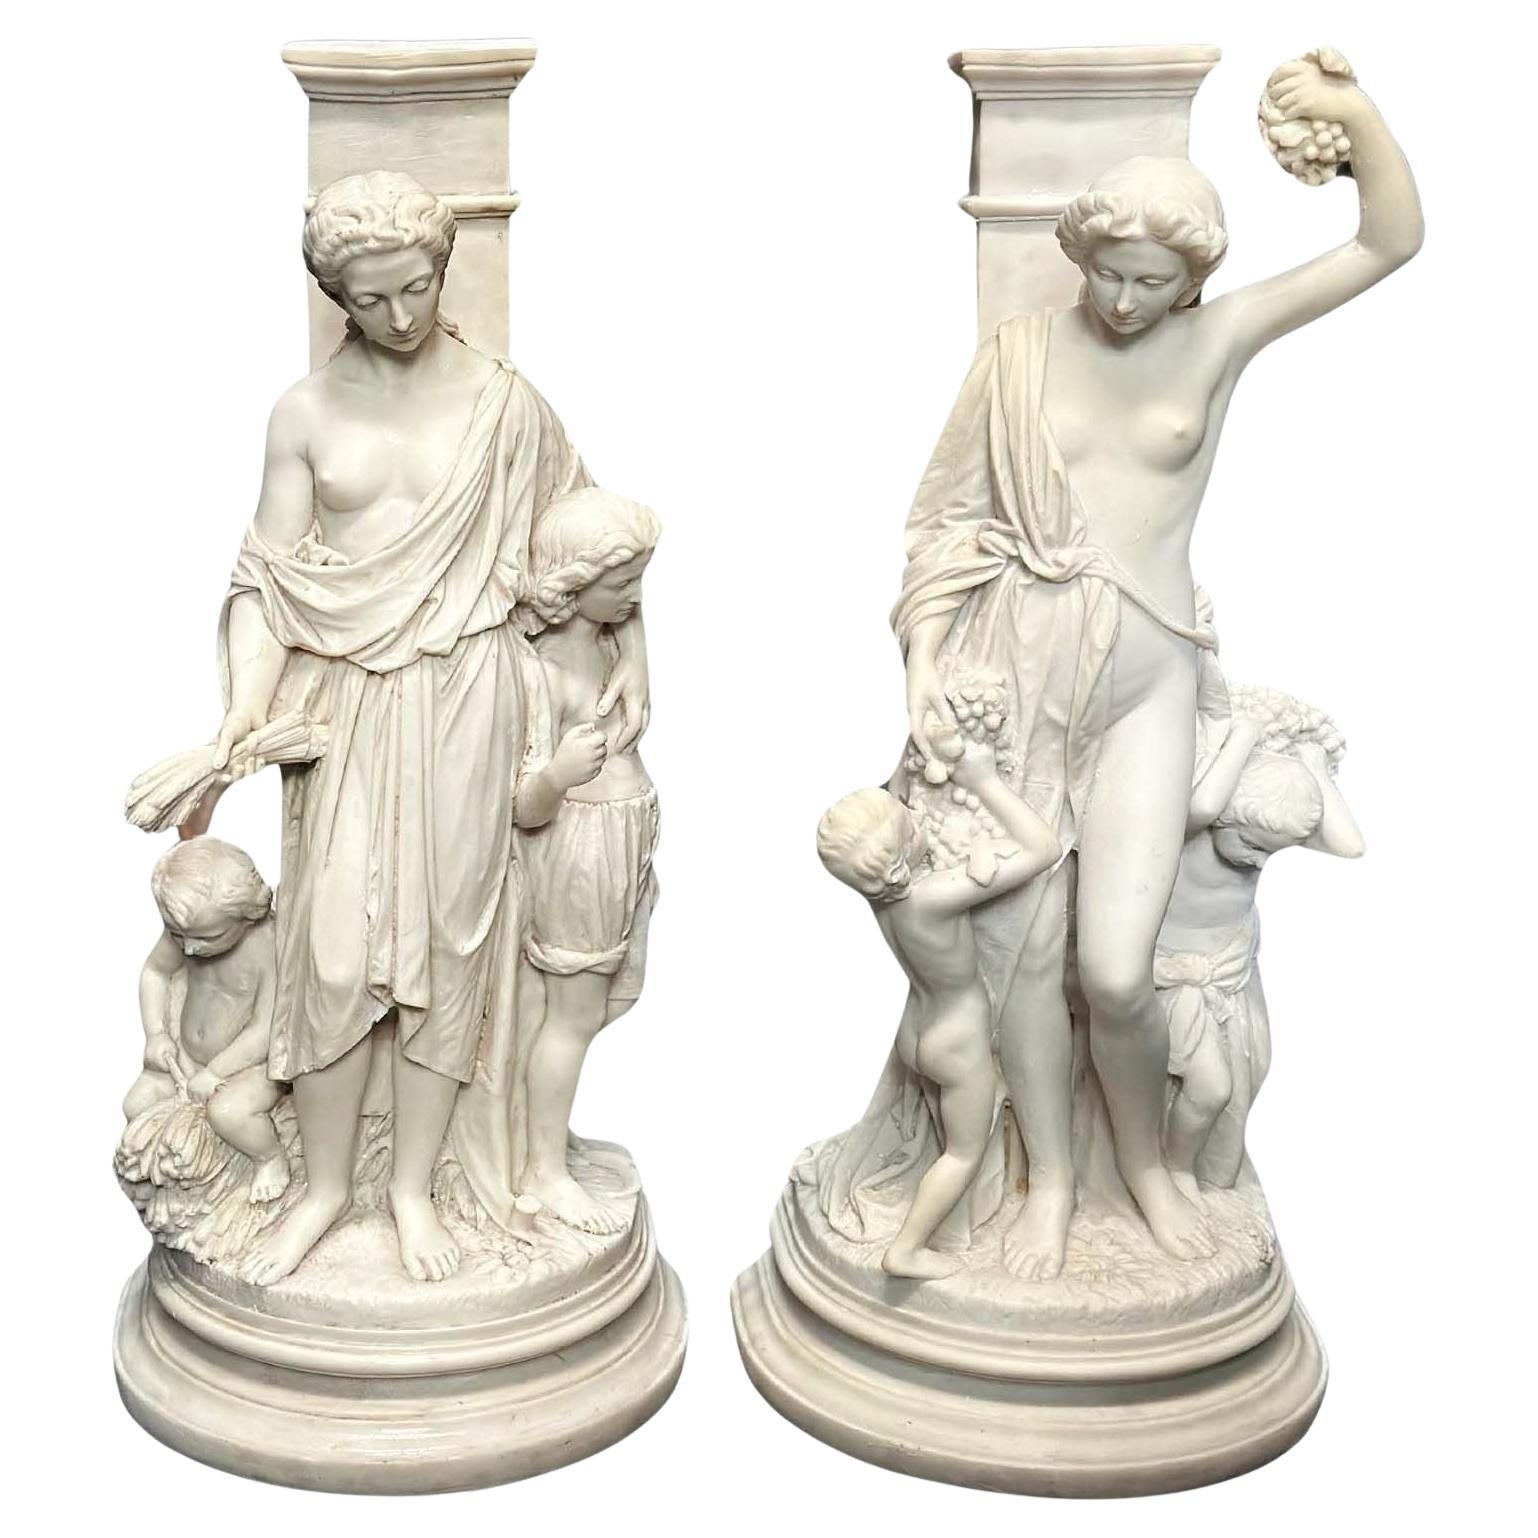 Pair of Italian Cast Marble Sculptures, c. 1900's